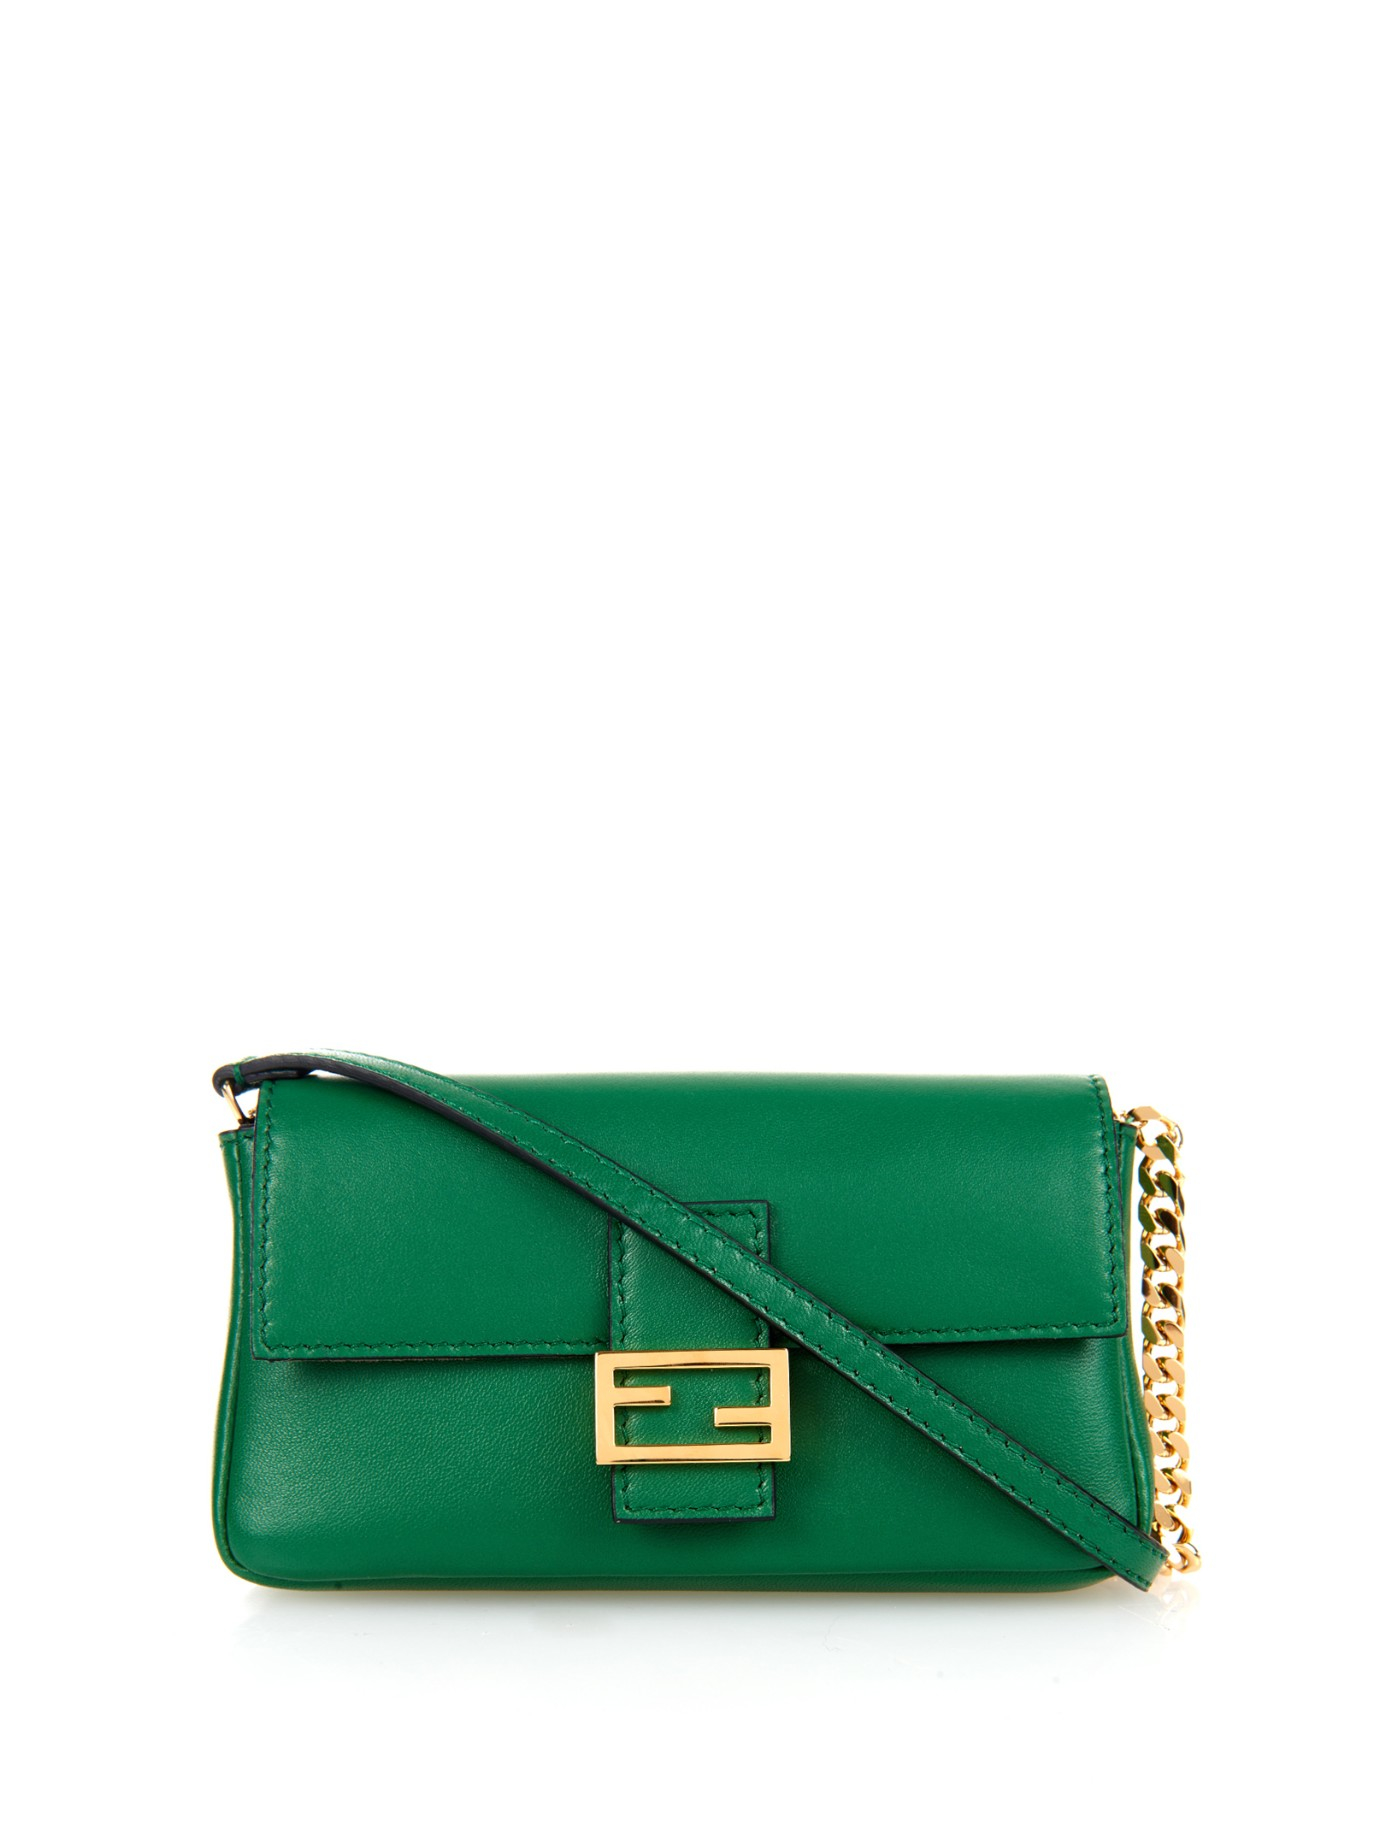 Fendi Micro Baguette Leather Cross-Body Bag in Green | Lyst